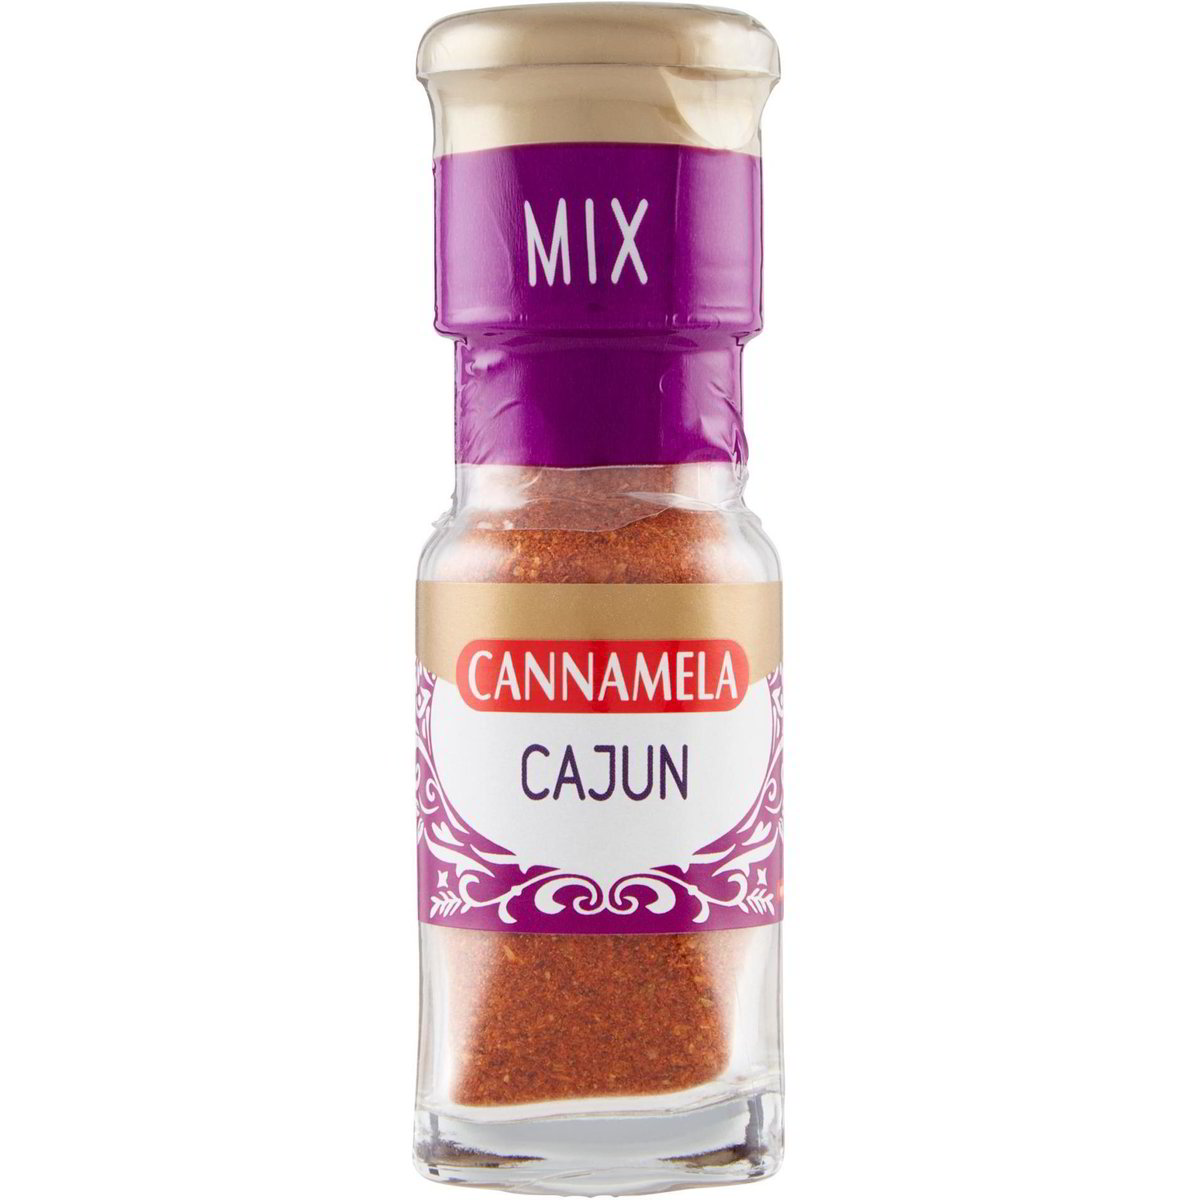 Spezie mix cajun CANNAMELA 35 G - Coop Shop